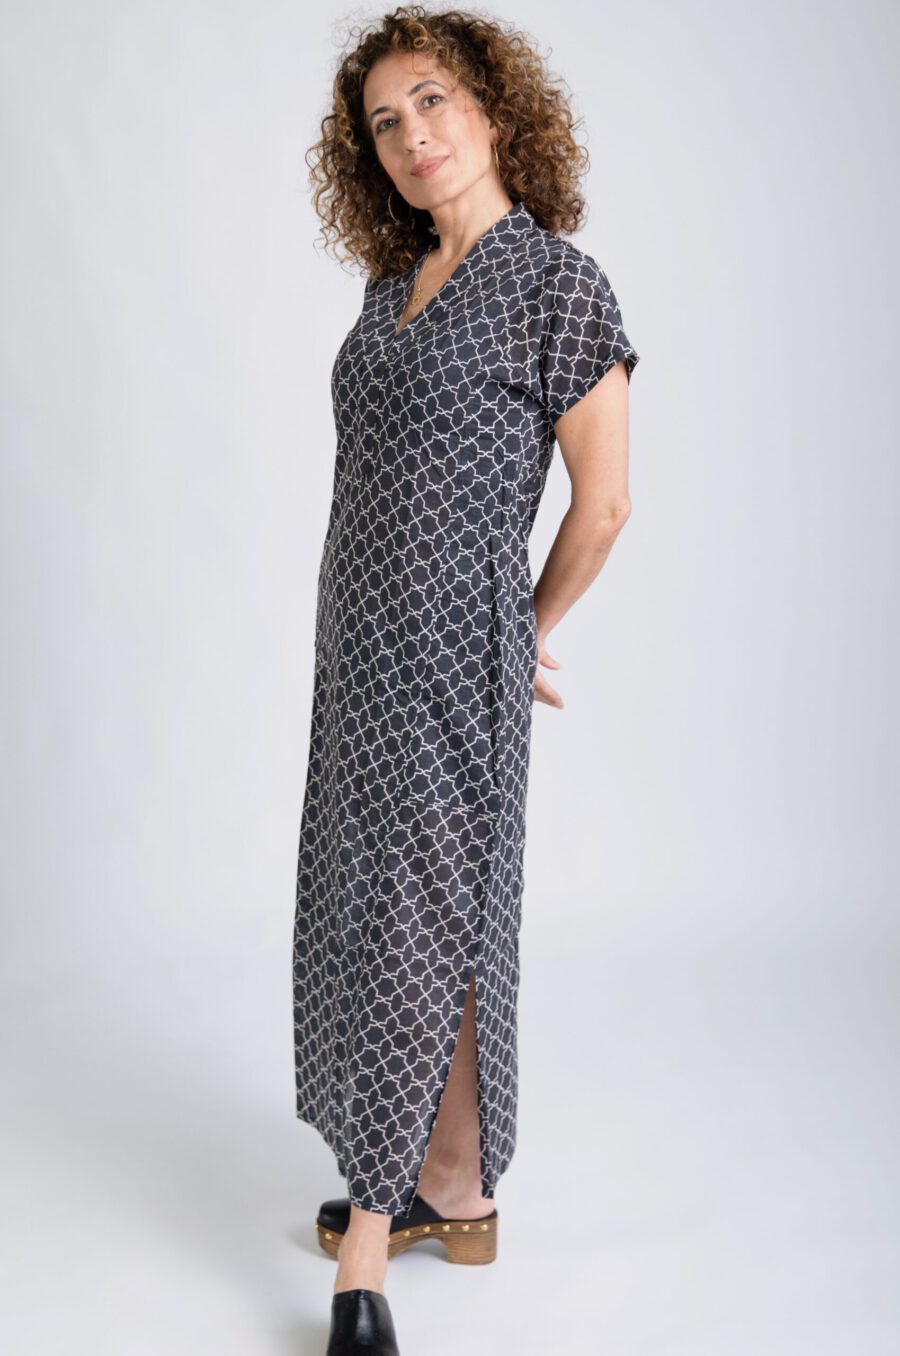 גלביה לנשים | גלבייה בעיצוב ייחודי - הדפס סקנדינבי, שמלה שחורה עם הדפס גיאומטרי